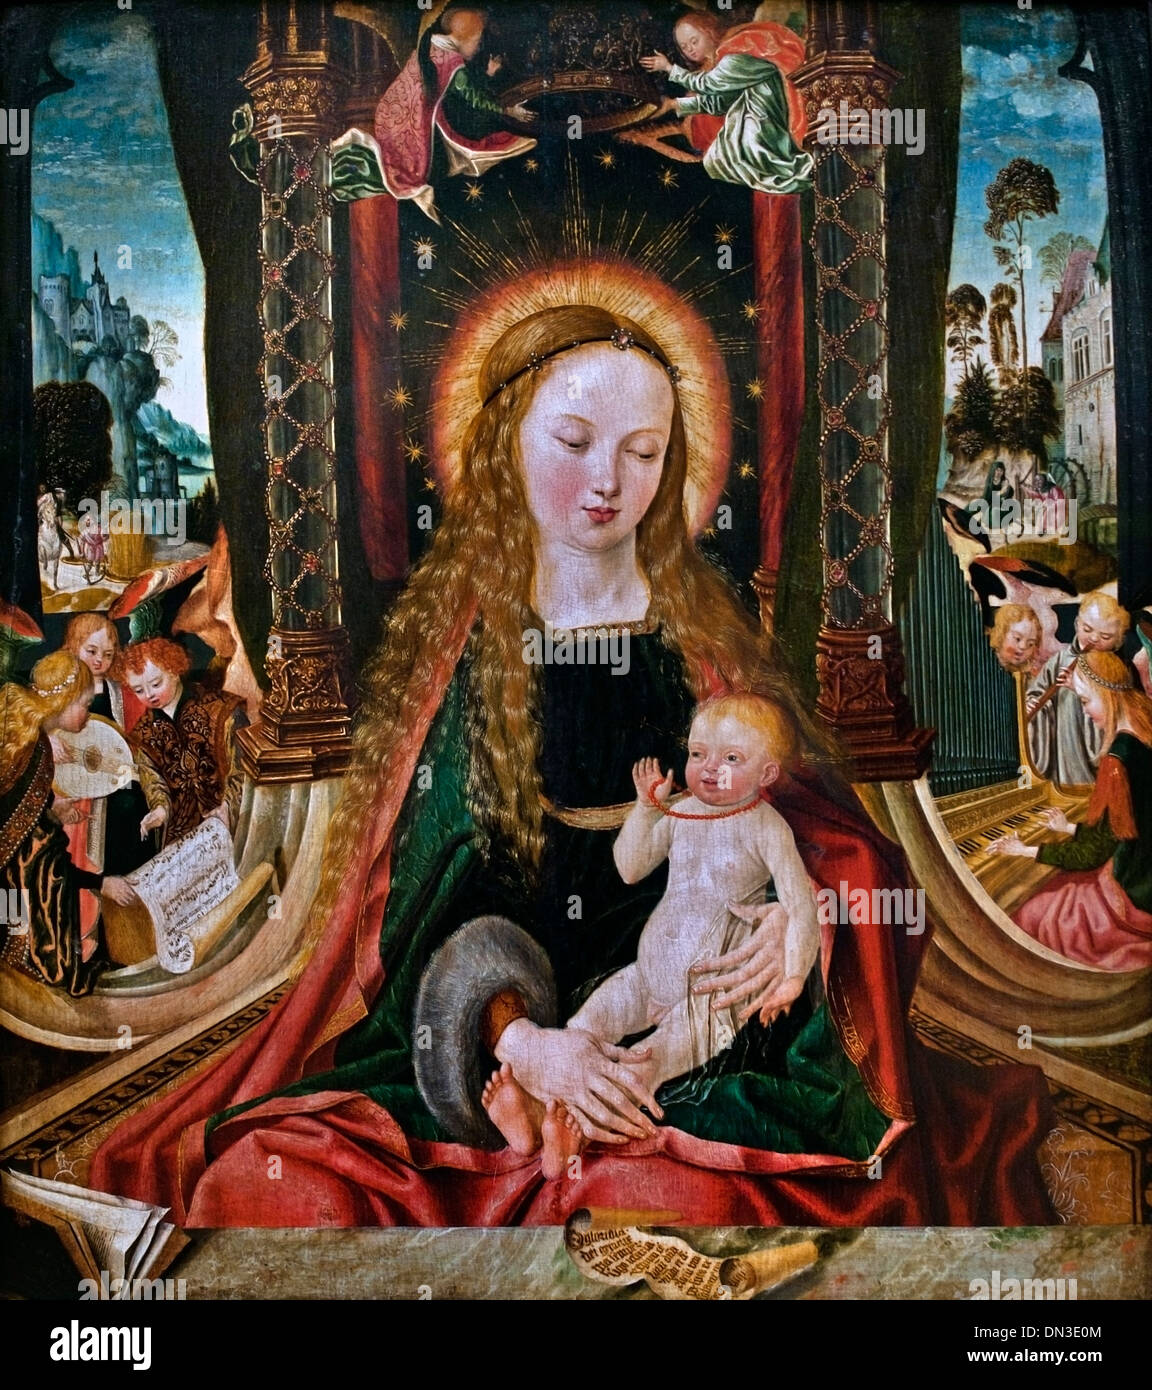 El Aachen maestro del Altar, la Virgen y el Niño con ángeles tocando instrumentos. 1480 - 1520 ALEMÁN Alemania Foto de stock